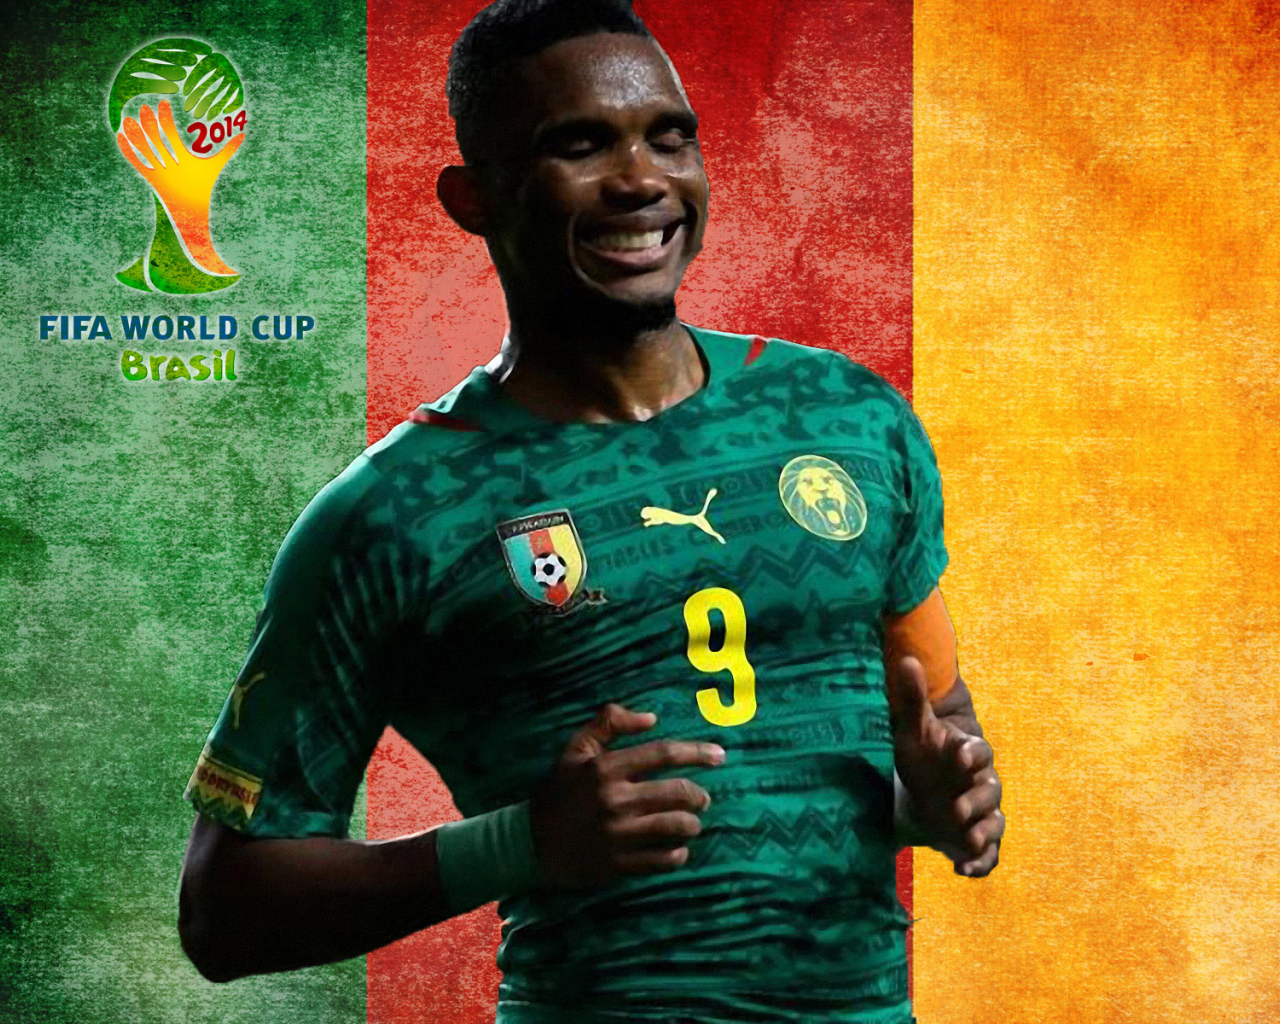 Игрок сборной Камеруна на Чемпионате мира по футболу в Бразилии 2014